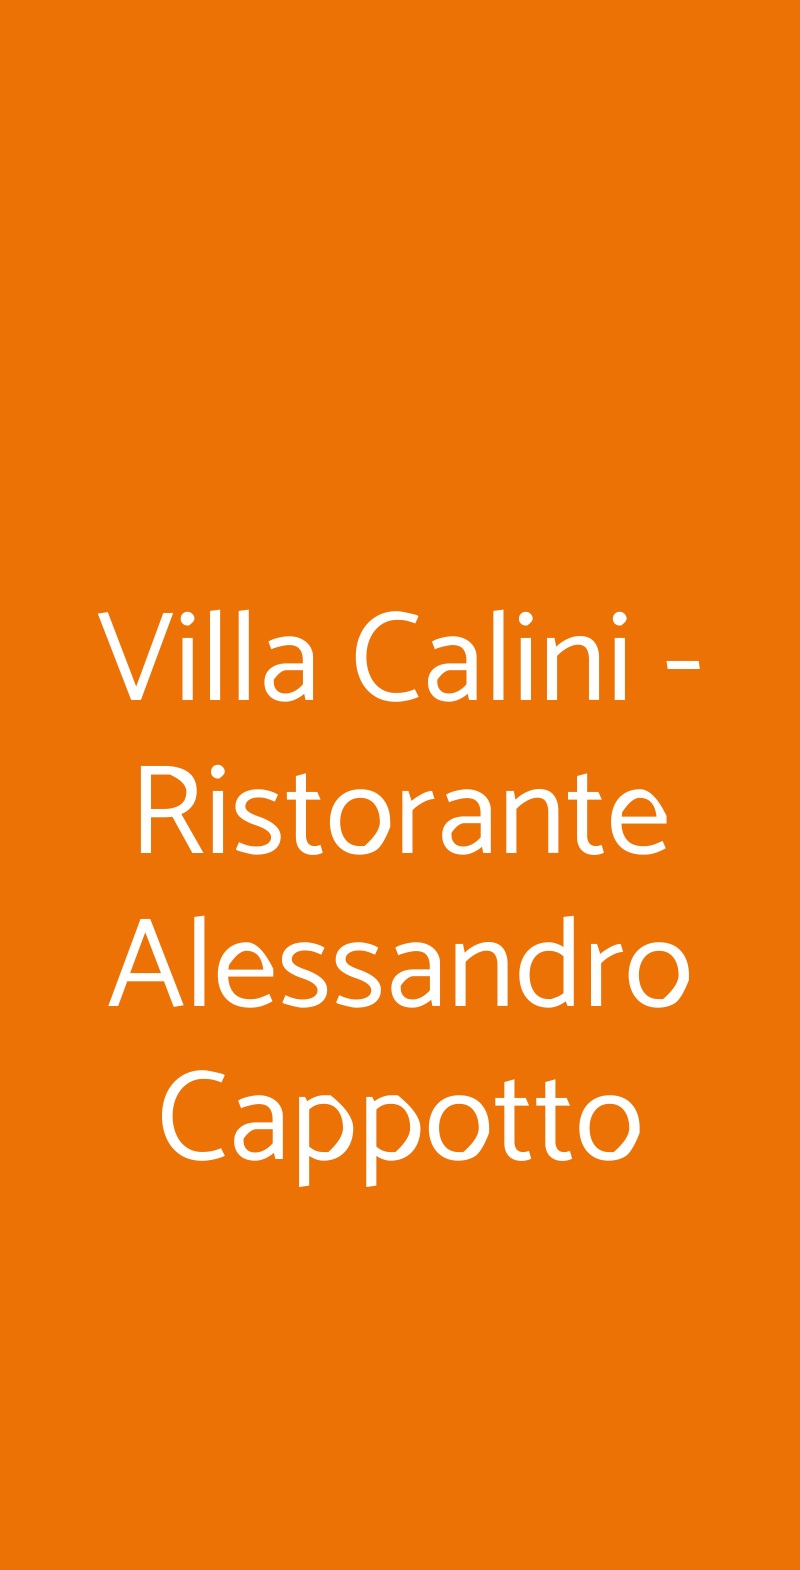 Villa Calini - Ristorante Alessandro Cappotto Coccaglio menù 1 pagina